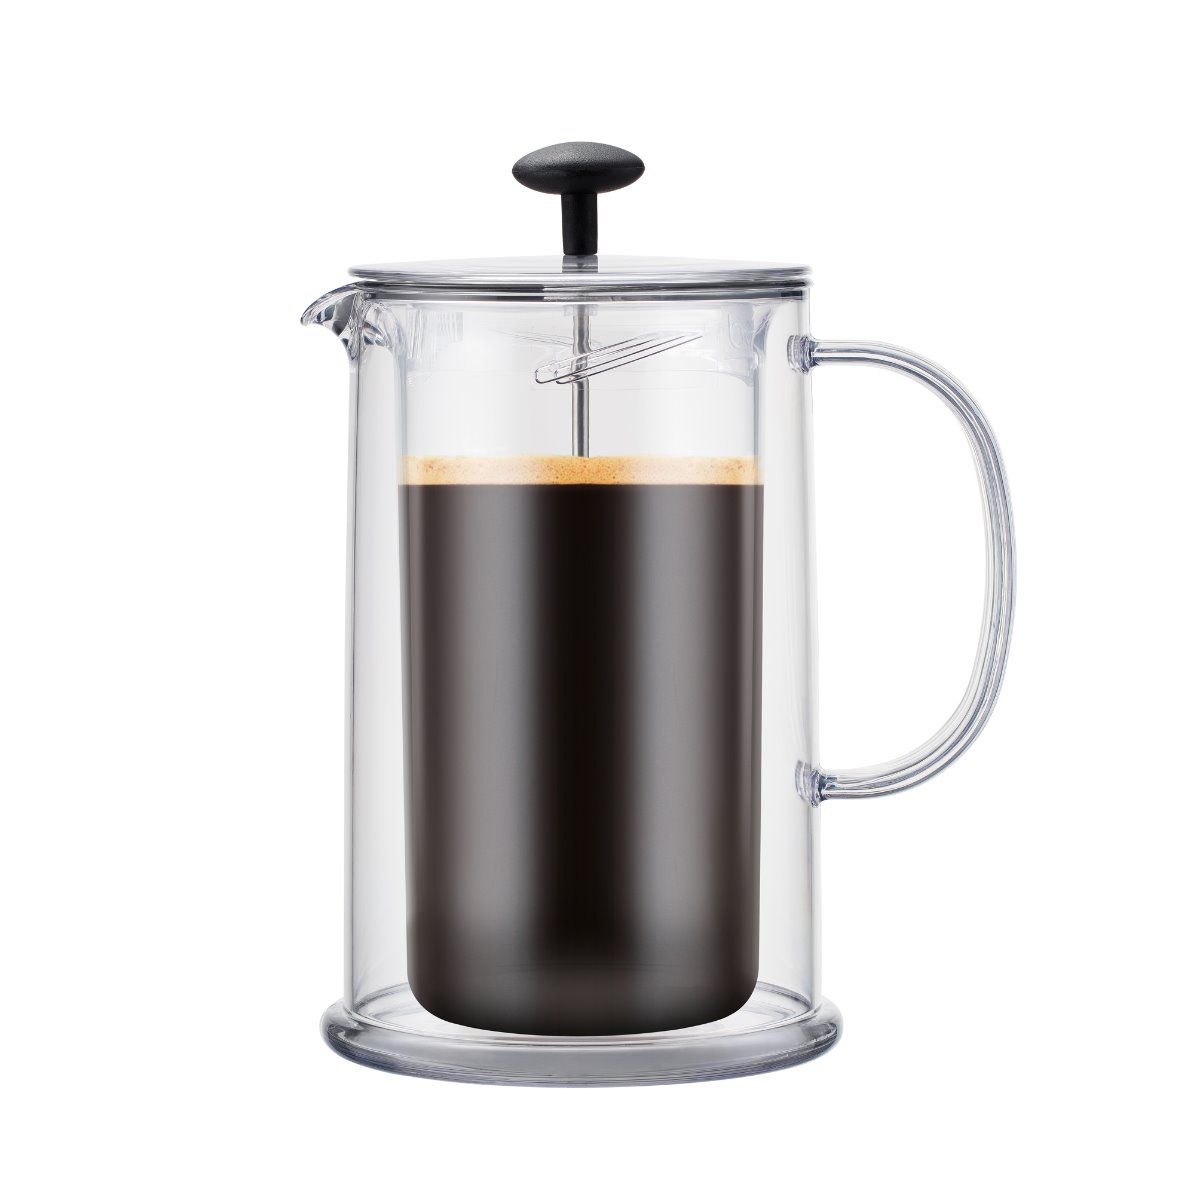 BODUM Thermia dubbelväggt kaffebryggare/tekanna, 8 kopp